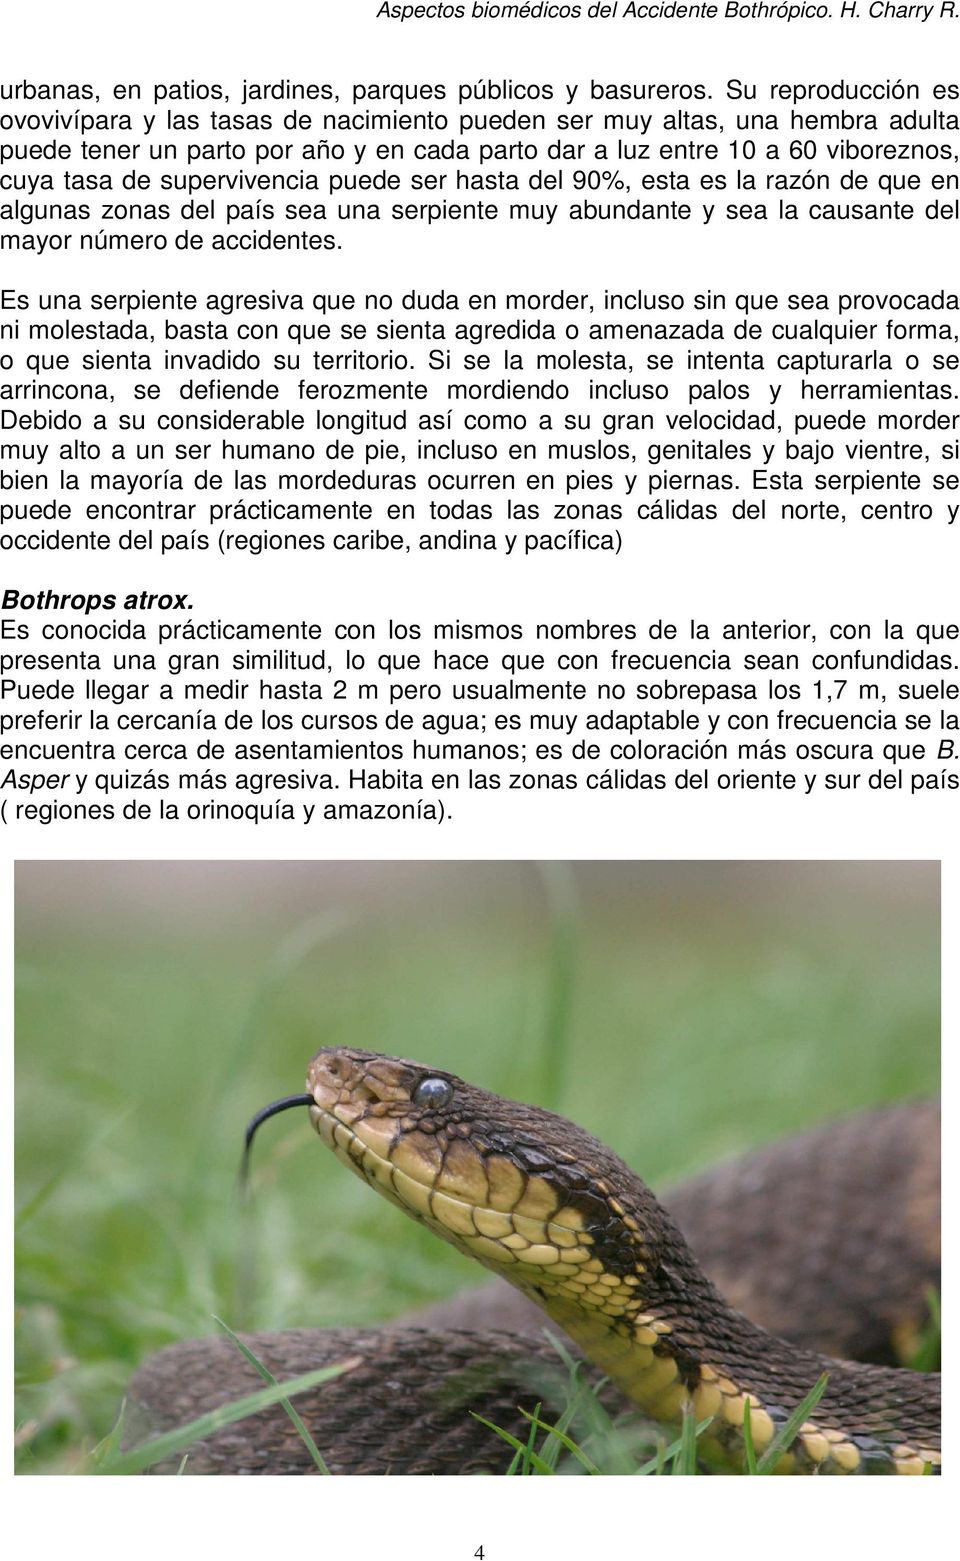 supervivencia puede ser hasta del 90%, esta es la razón de que en algunas zonas del país sea una serpiente muy abundante y sea la causante del mayor número de accidentes.